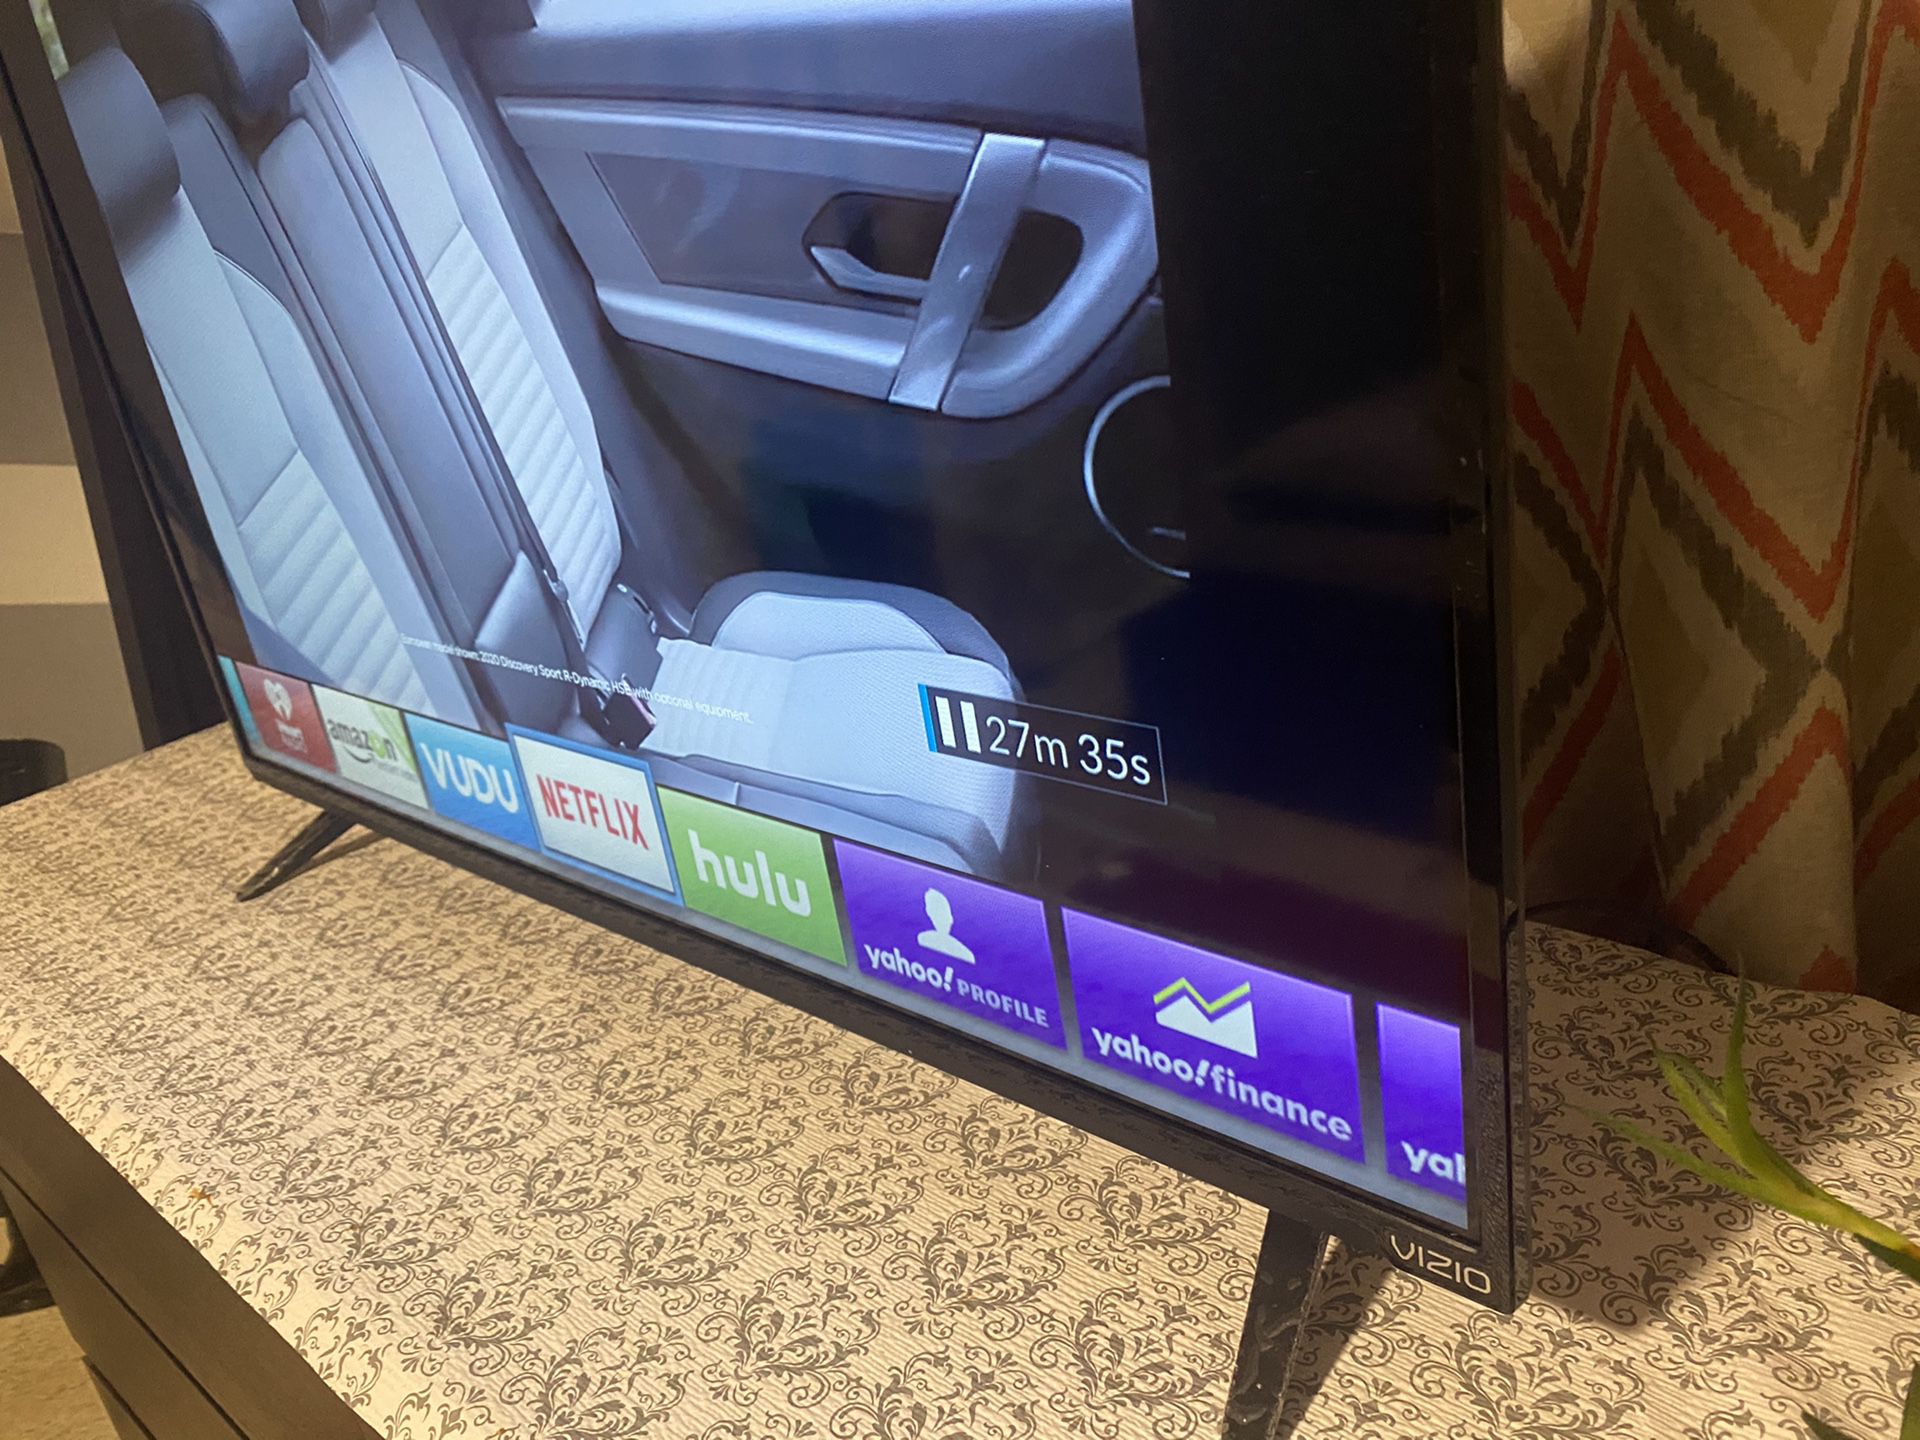 42 inch Vizio Smart TV